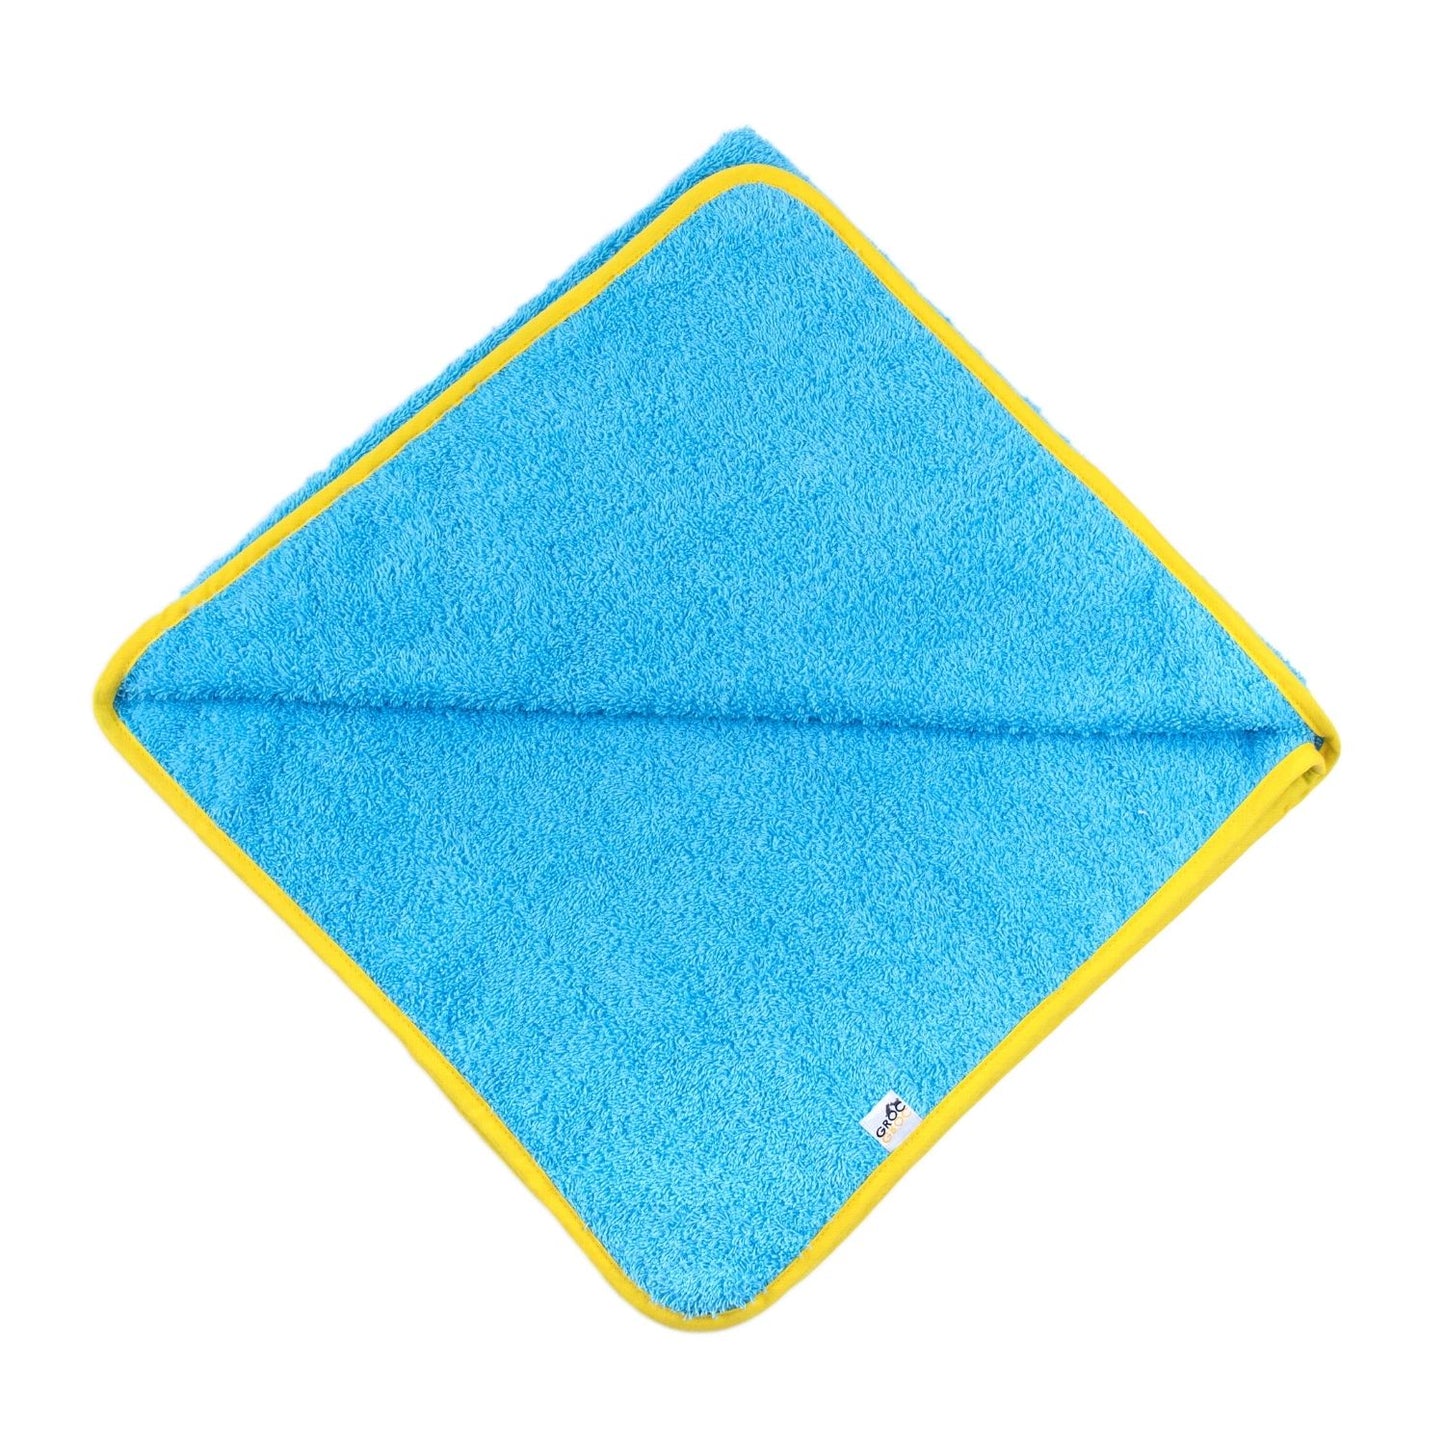 GROC GROC handgefertigtes Handtuch für Hunde | Hundehandtuch | Badecape aus Frottee | Baumwolle